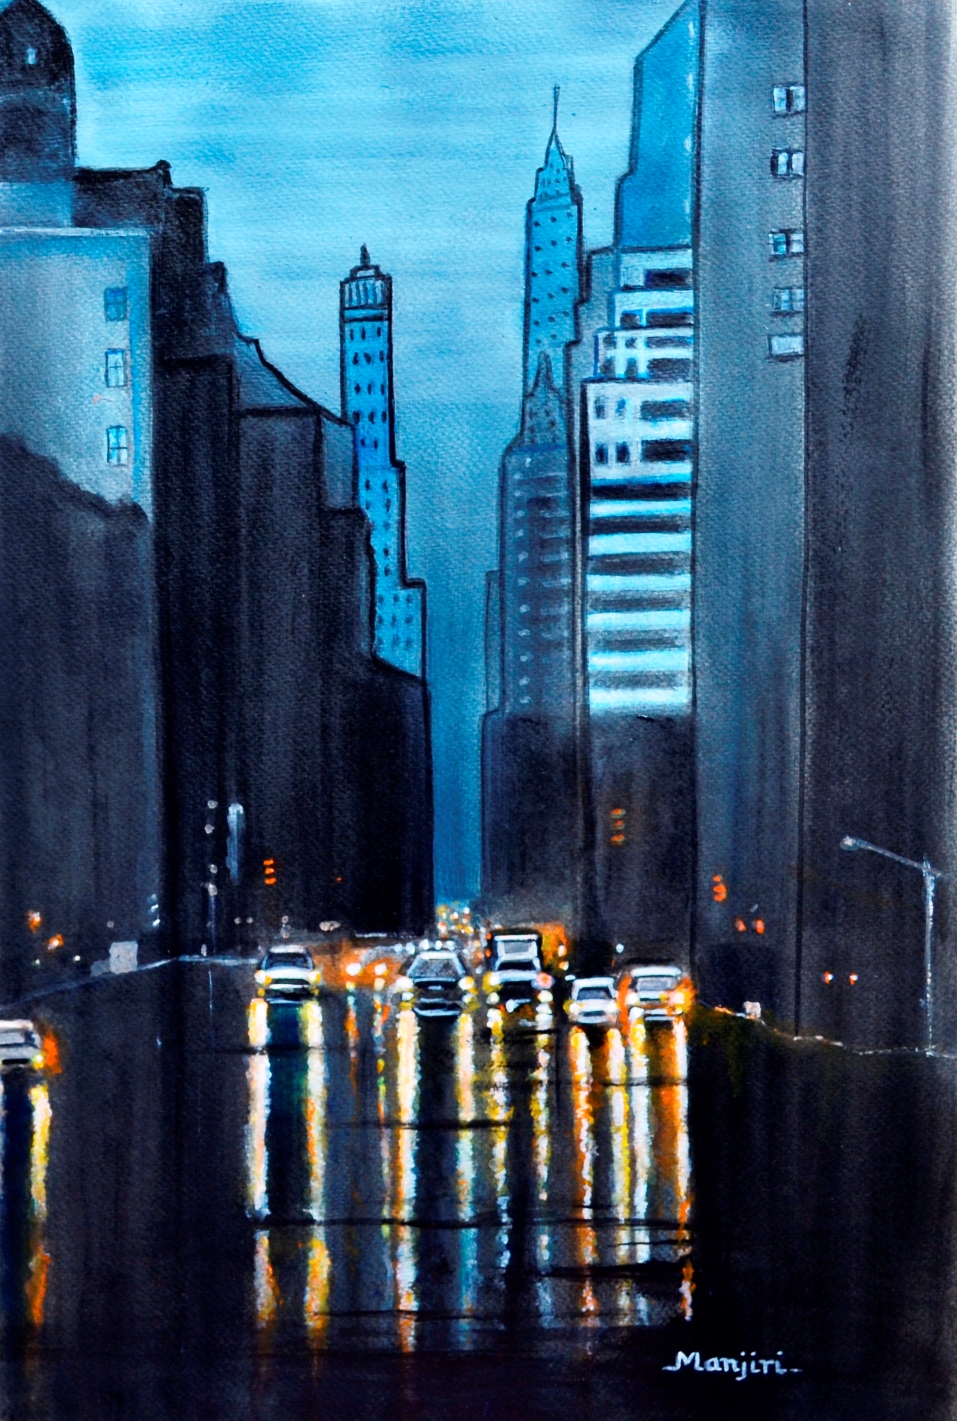 Rainy City Night cityscapes